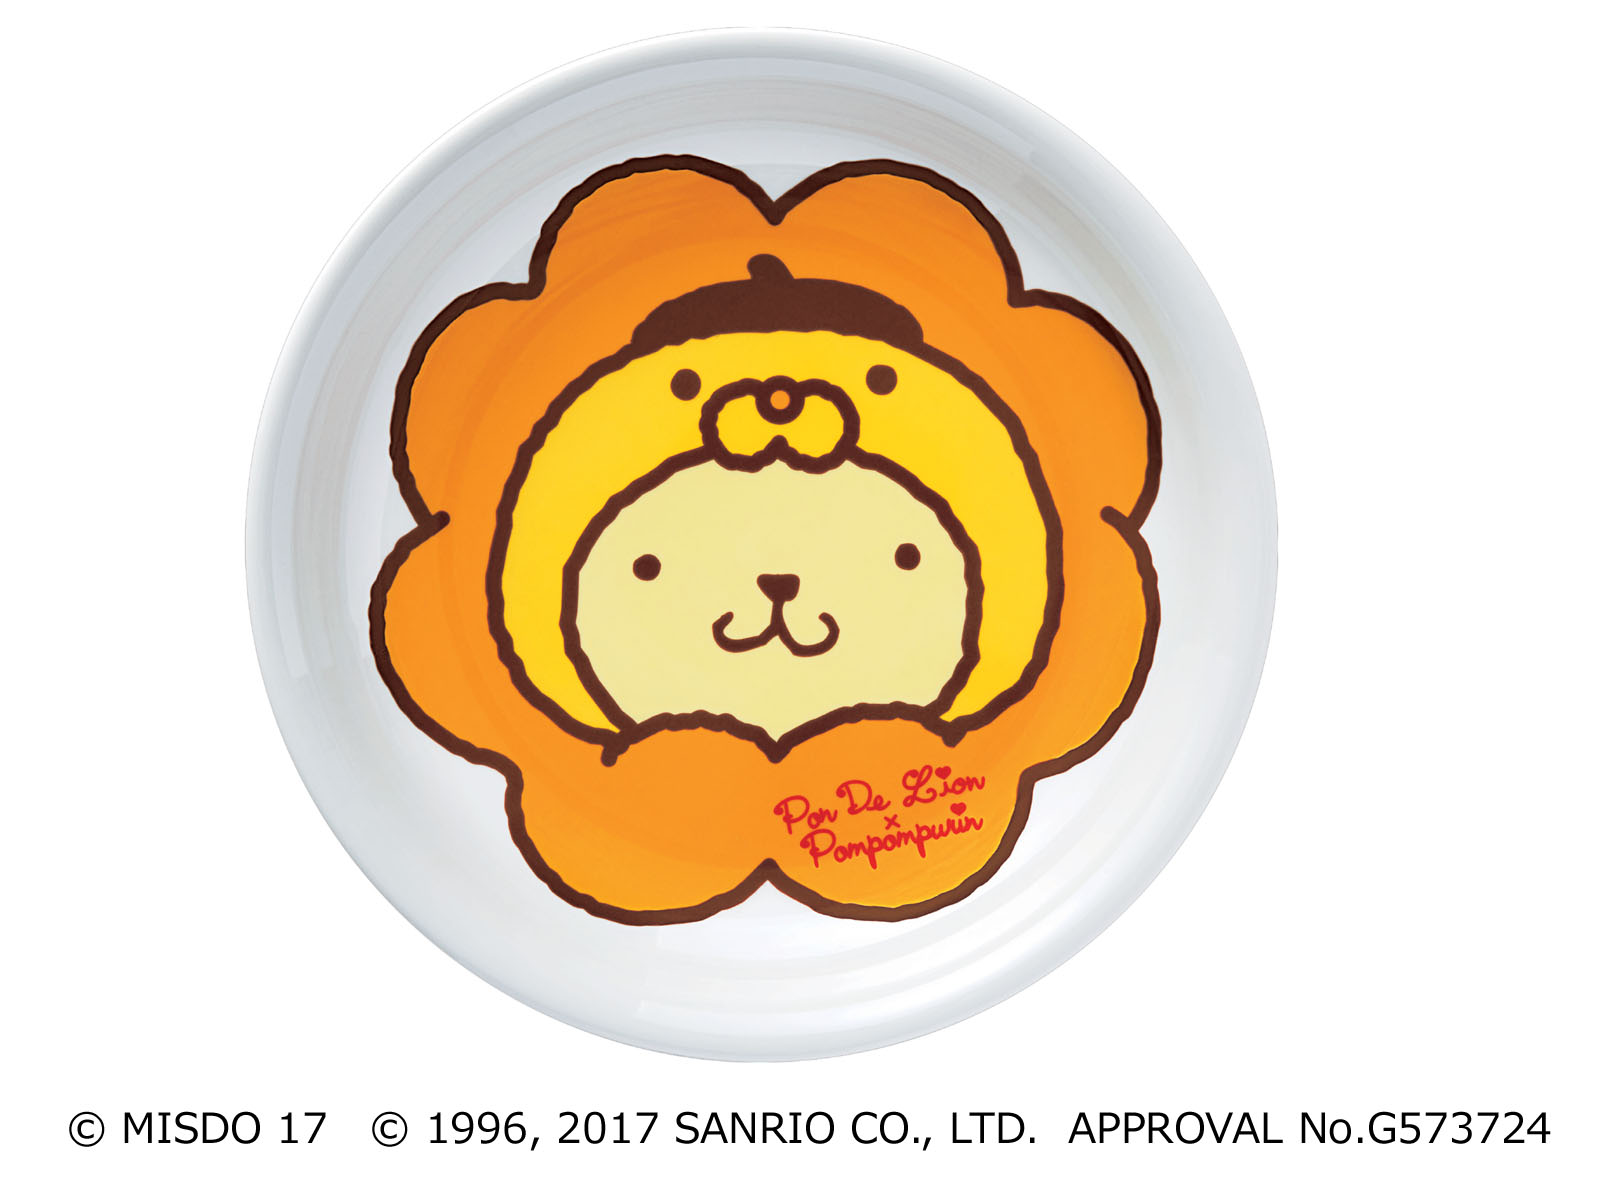 ミスタードーナツ 6月16日 金 カレー皿 発売開始 ダスキンのプレスリリース